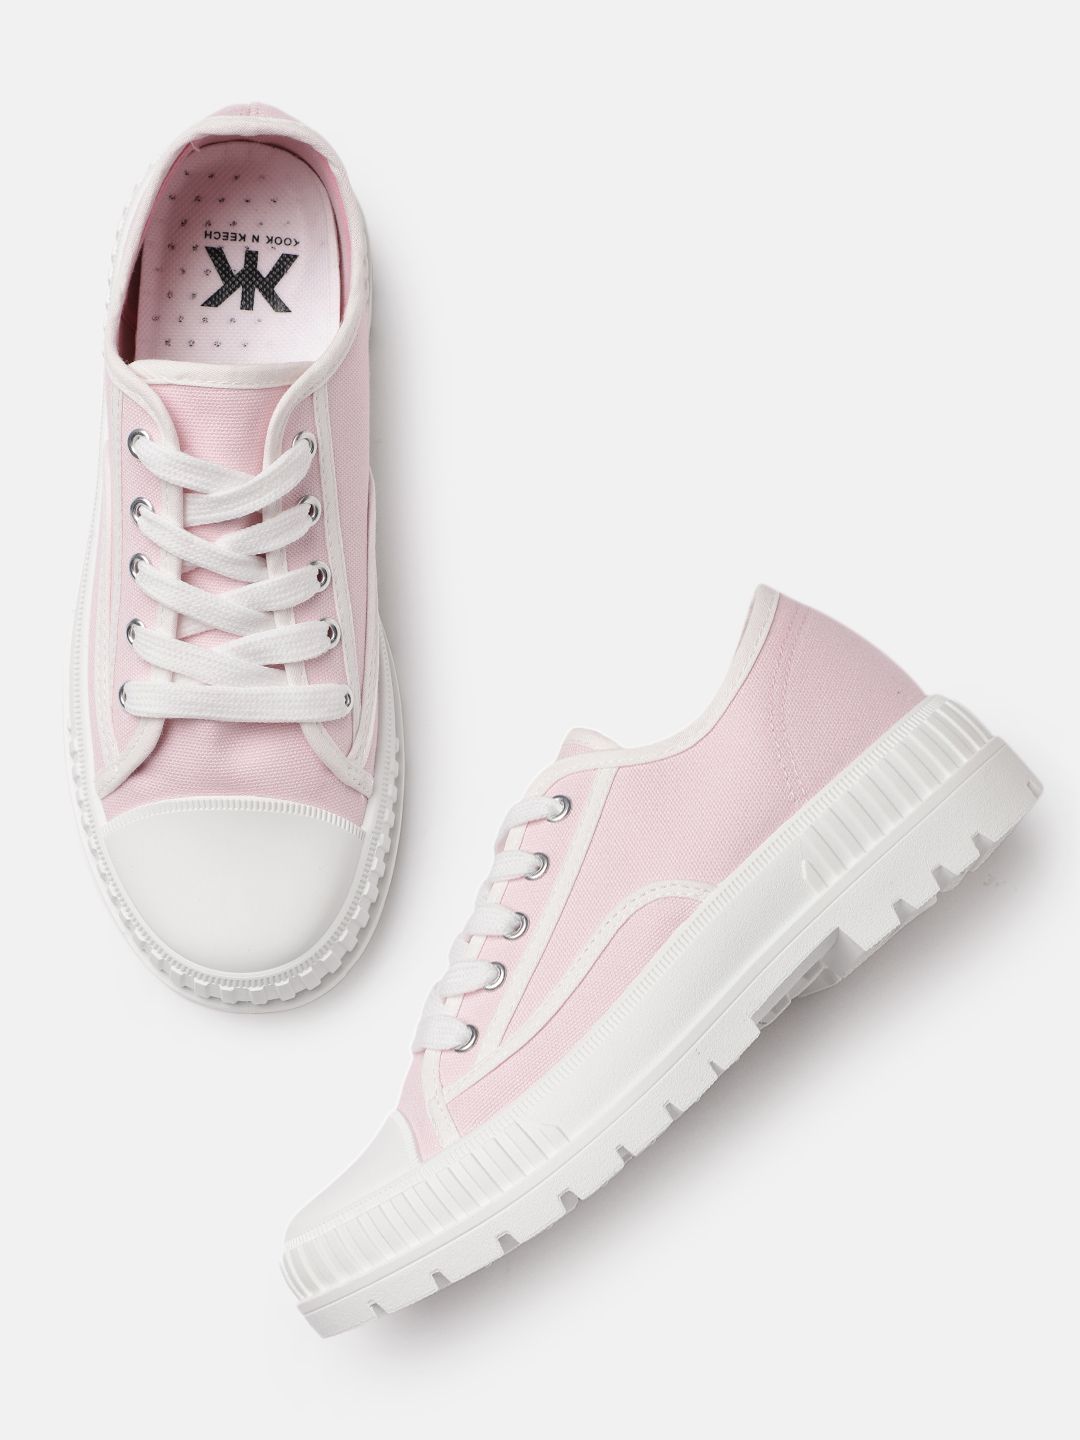 Kook N Keech Women Pink & White Solid Sneakers Price in India